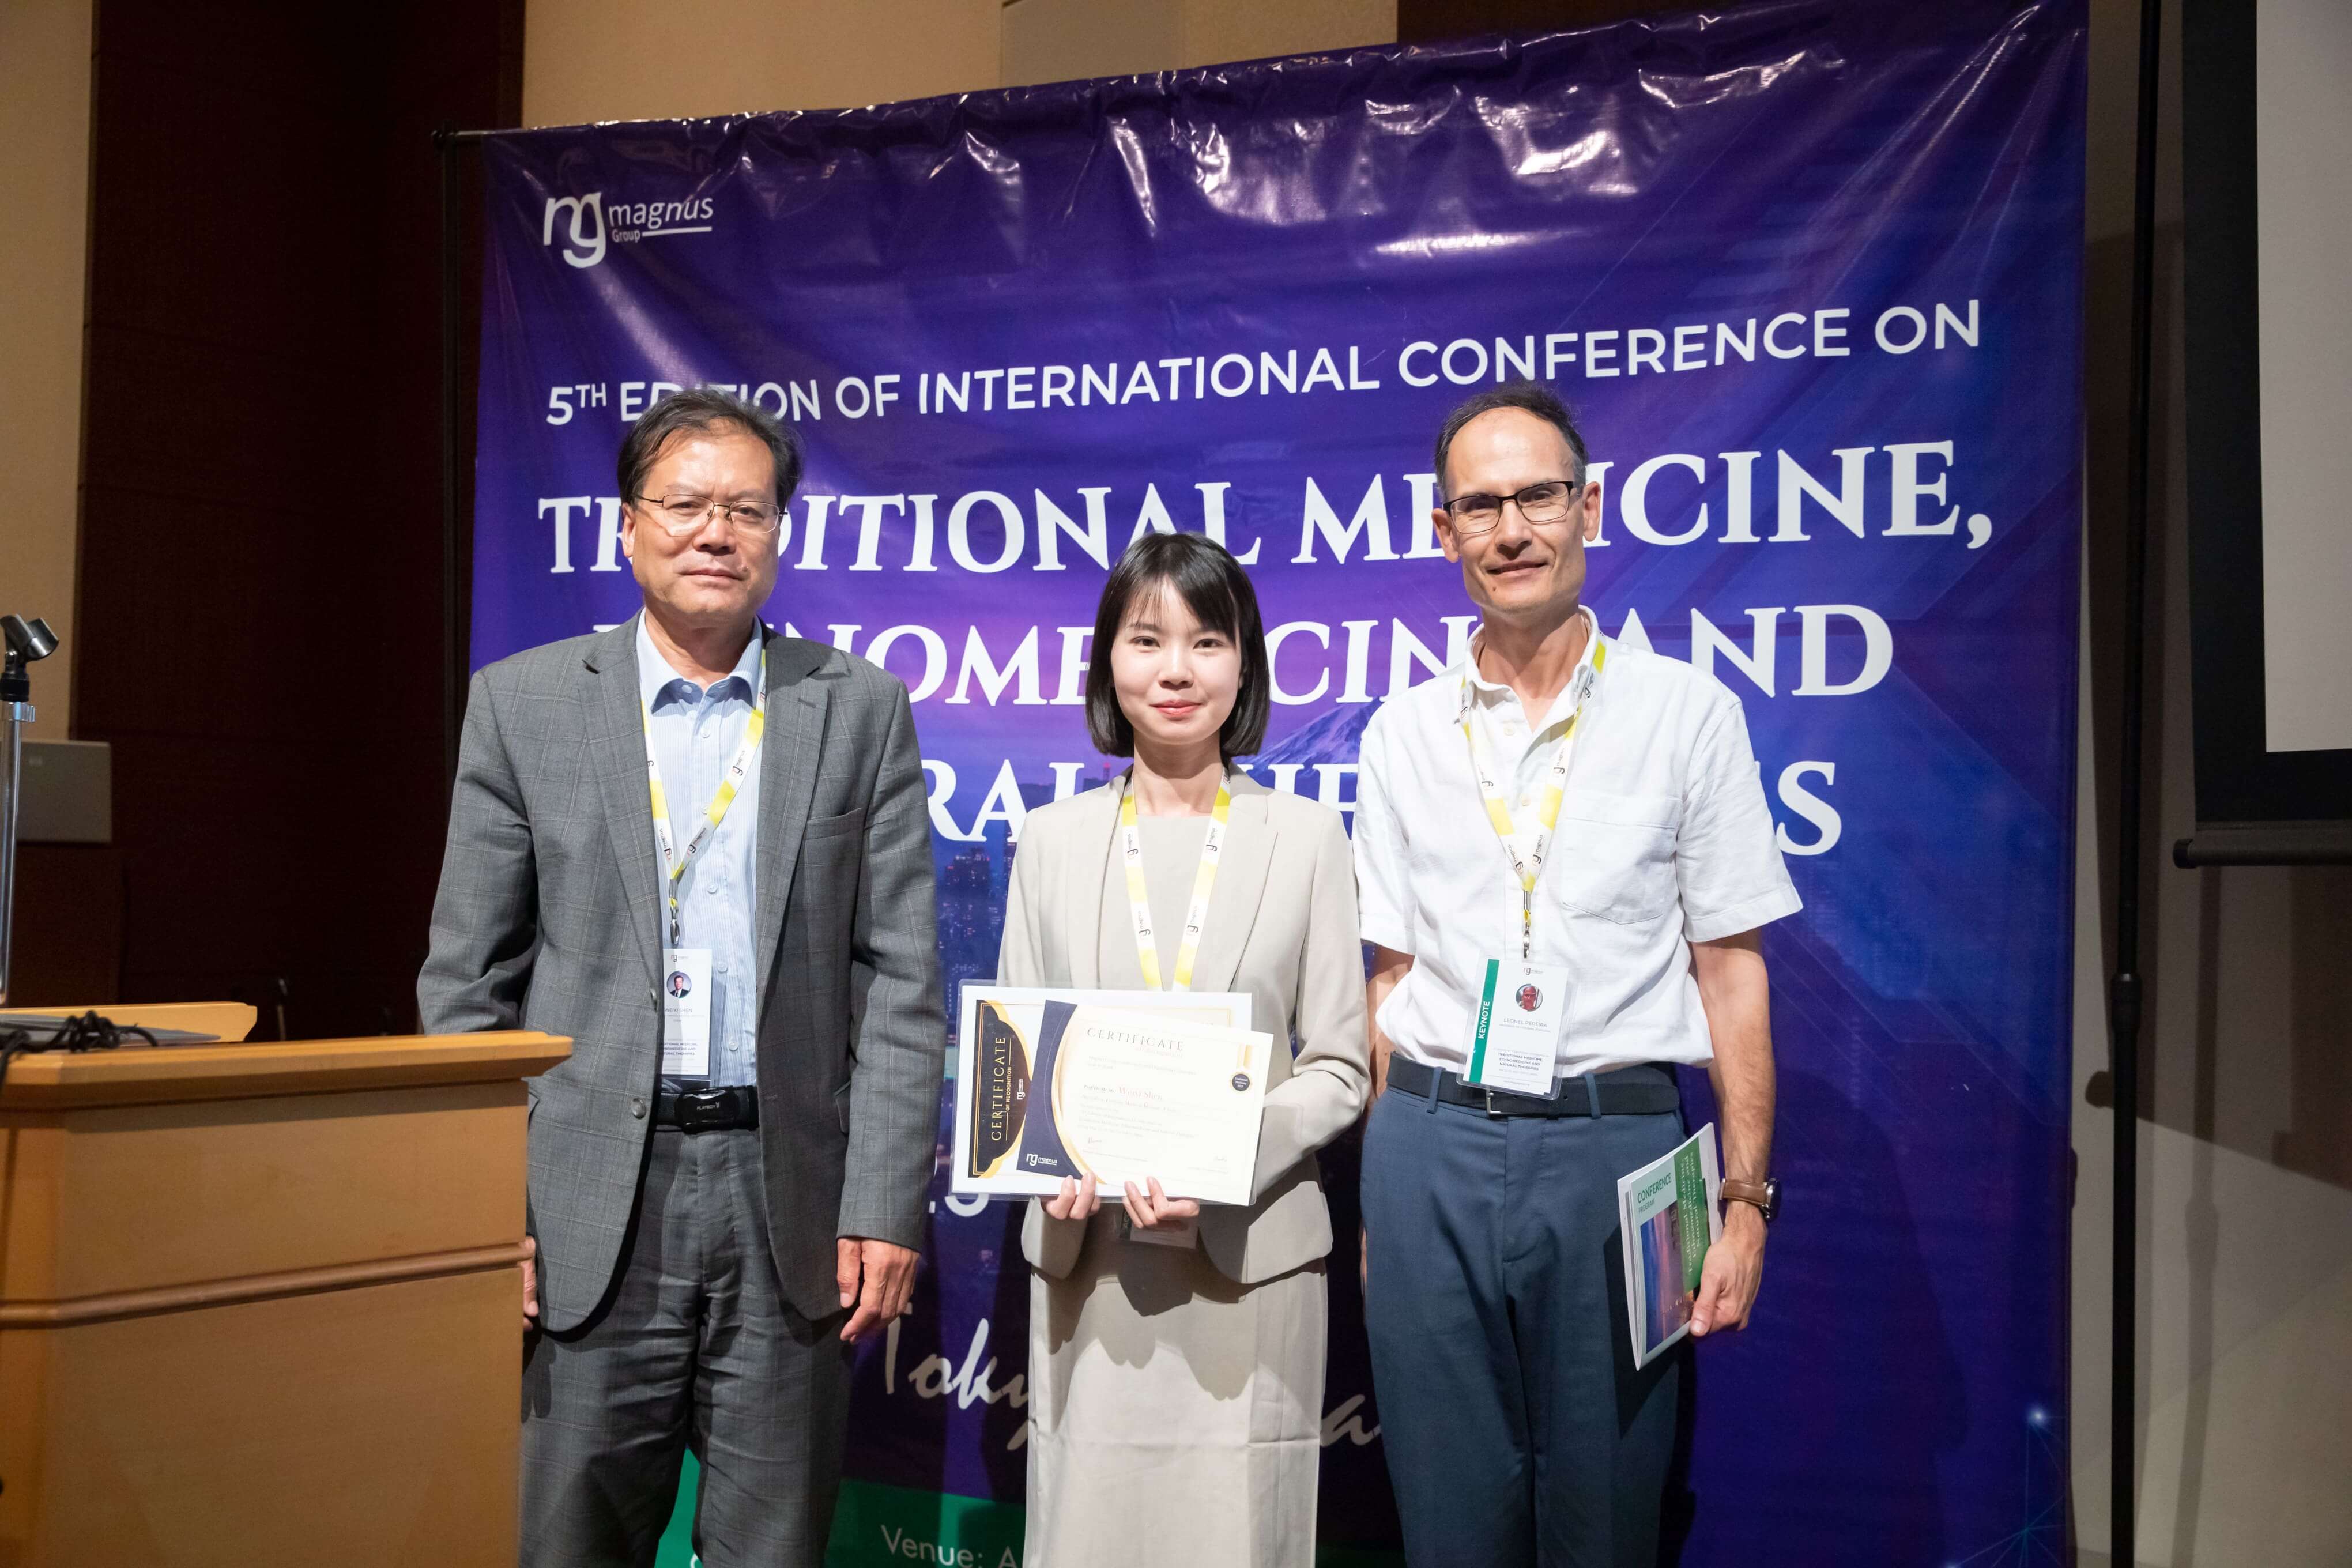 Traditional Medicine Conferences